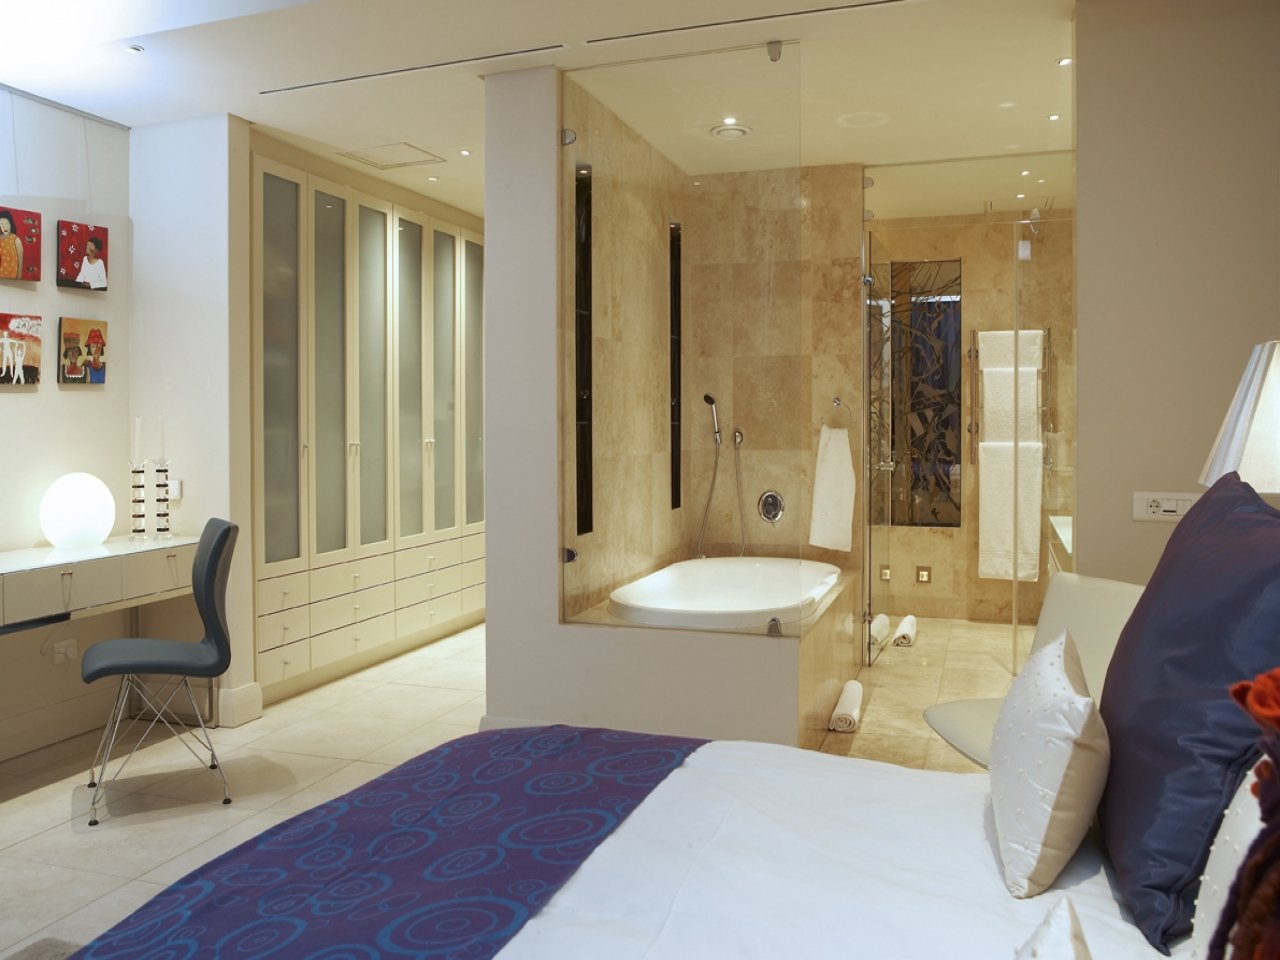 Санузел в спальне - 100 фото красивого дизайна спальни с санузлом